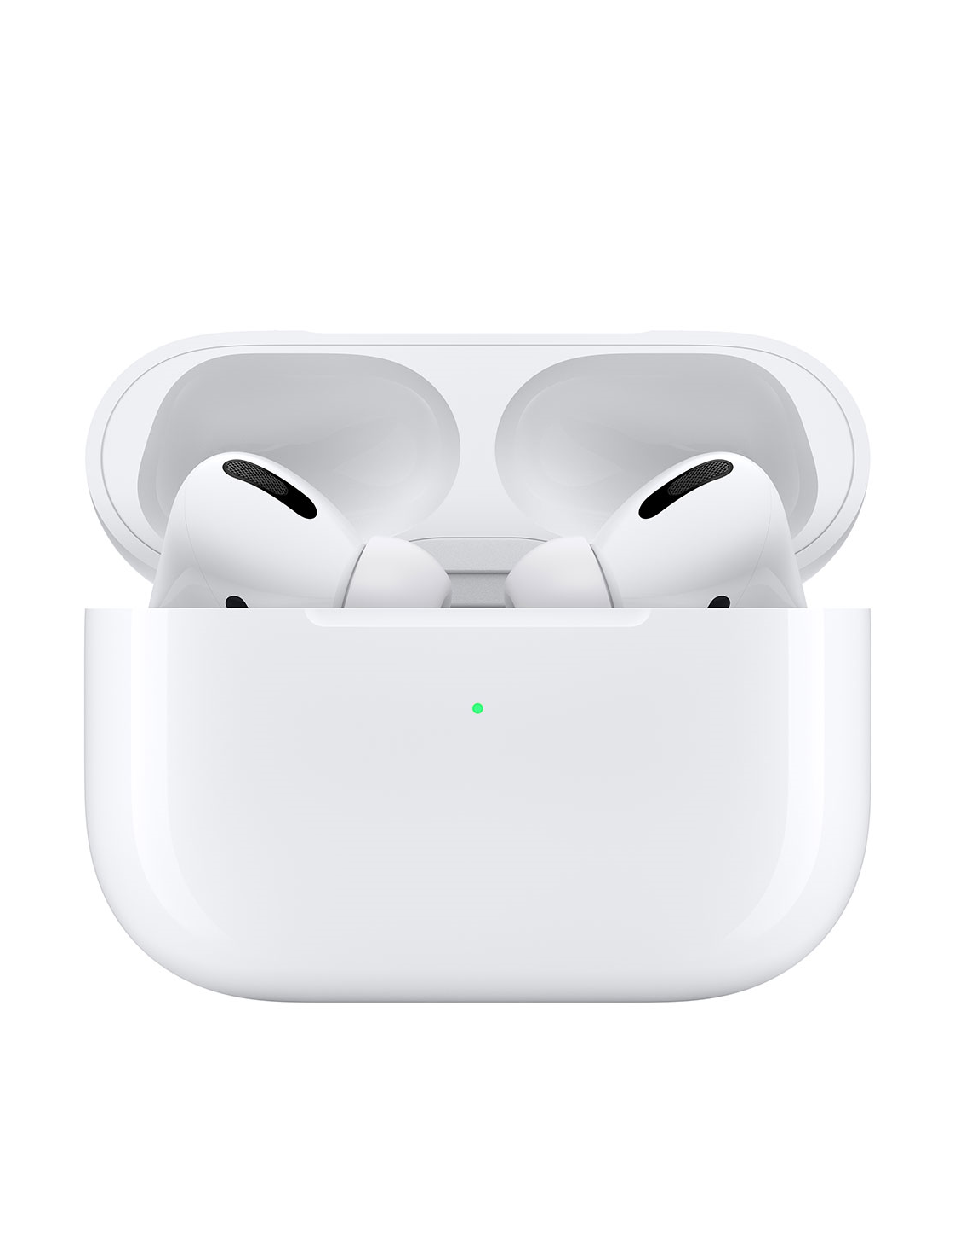 Revisor Intakt Sinewi Apple Airpods Pro Headset med Magsafe opladningsetui